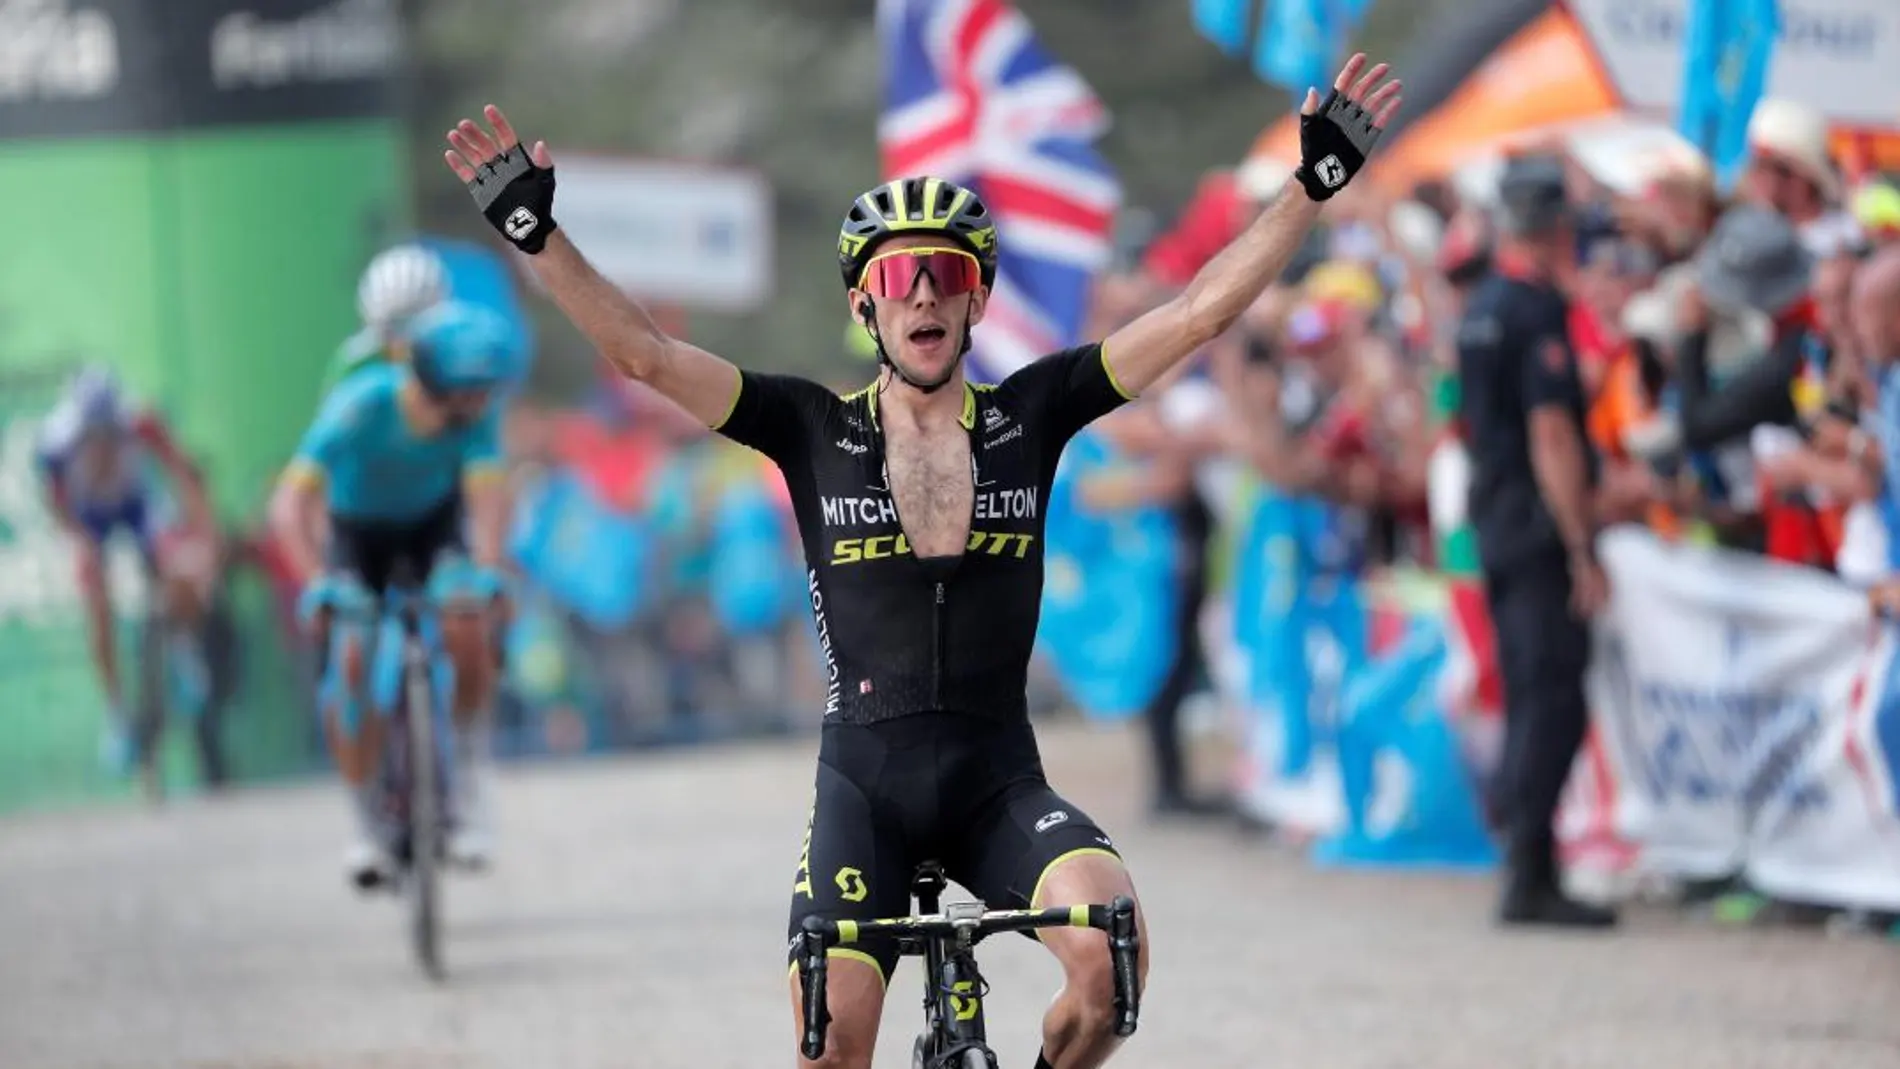 El ciclista británico Simon Yates (Mitchelton) entra vencedor en la 14ª etapa de la Vuelta Ciclista a España. Foto: Efe